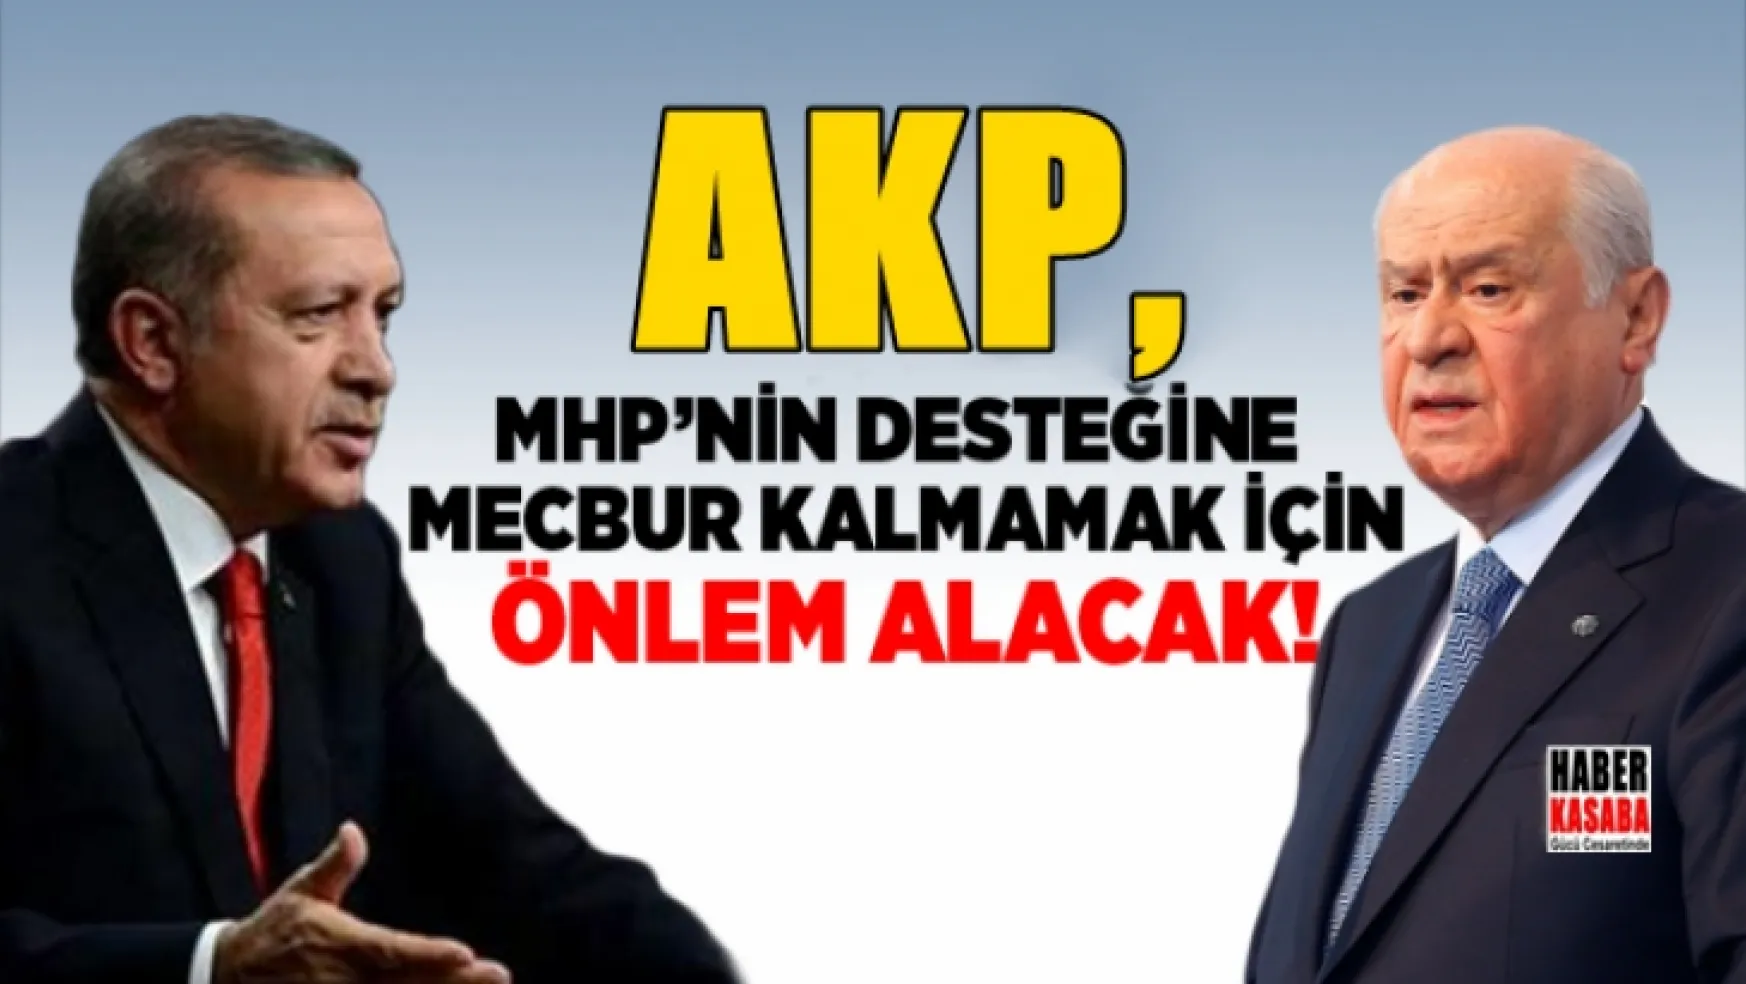 AK Parti, MHP'nin desteğine mecbur kalmamak için önlem alacak!